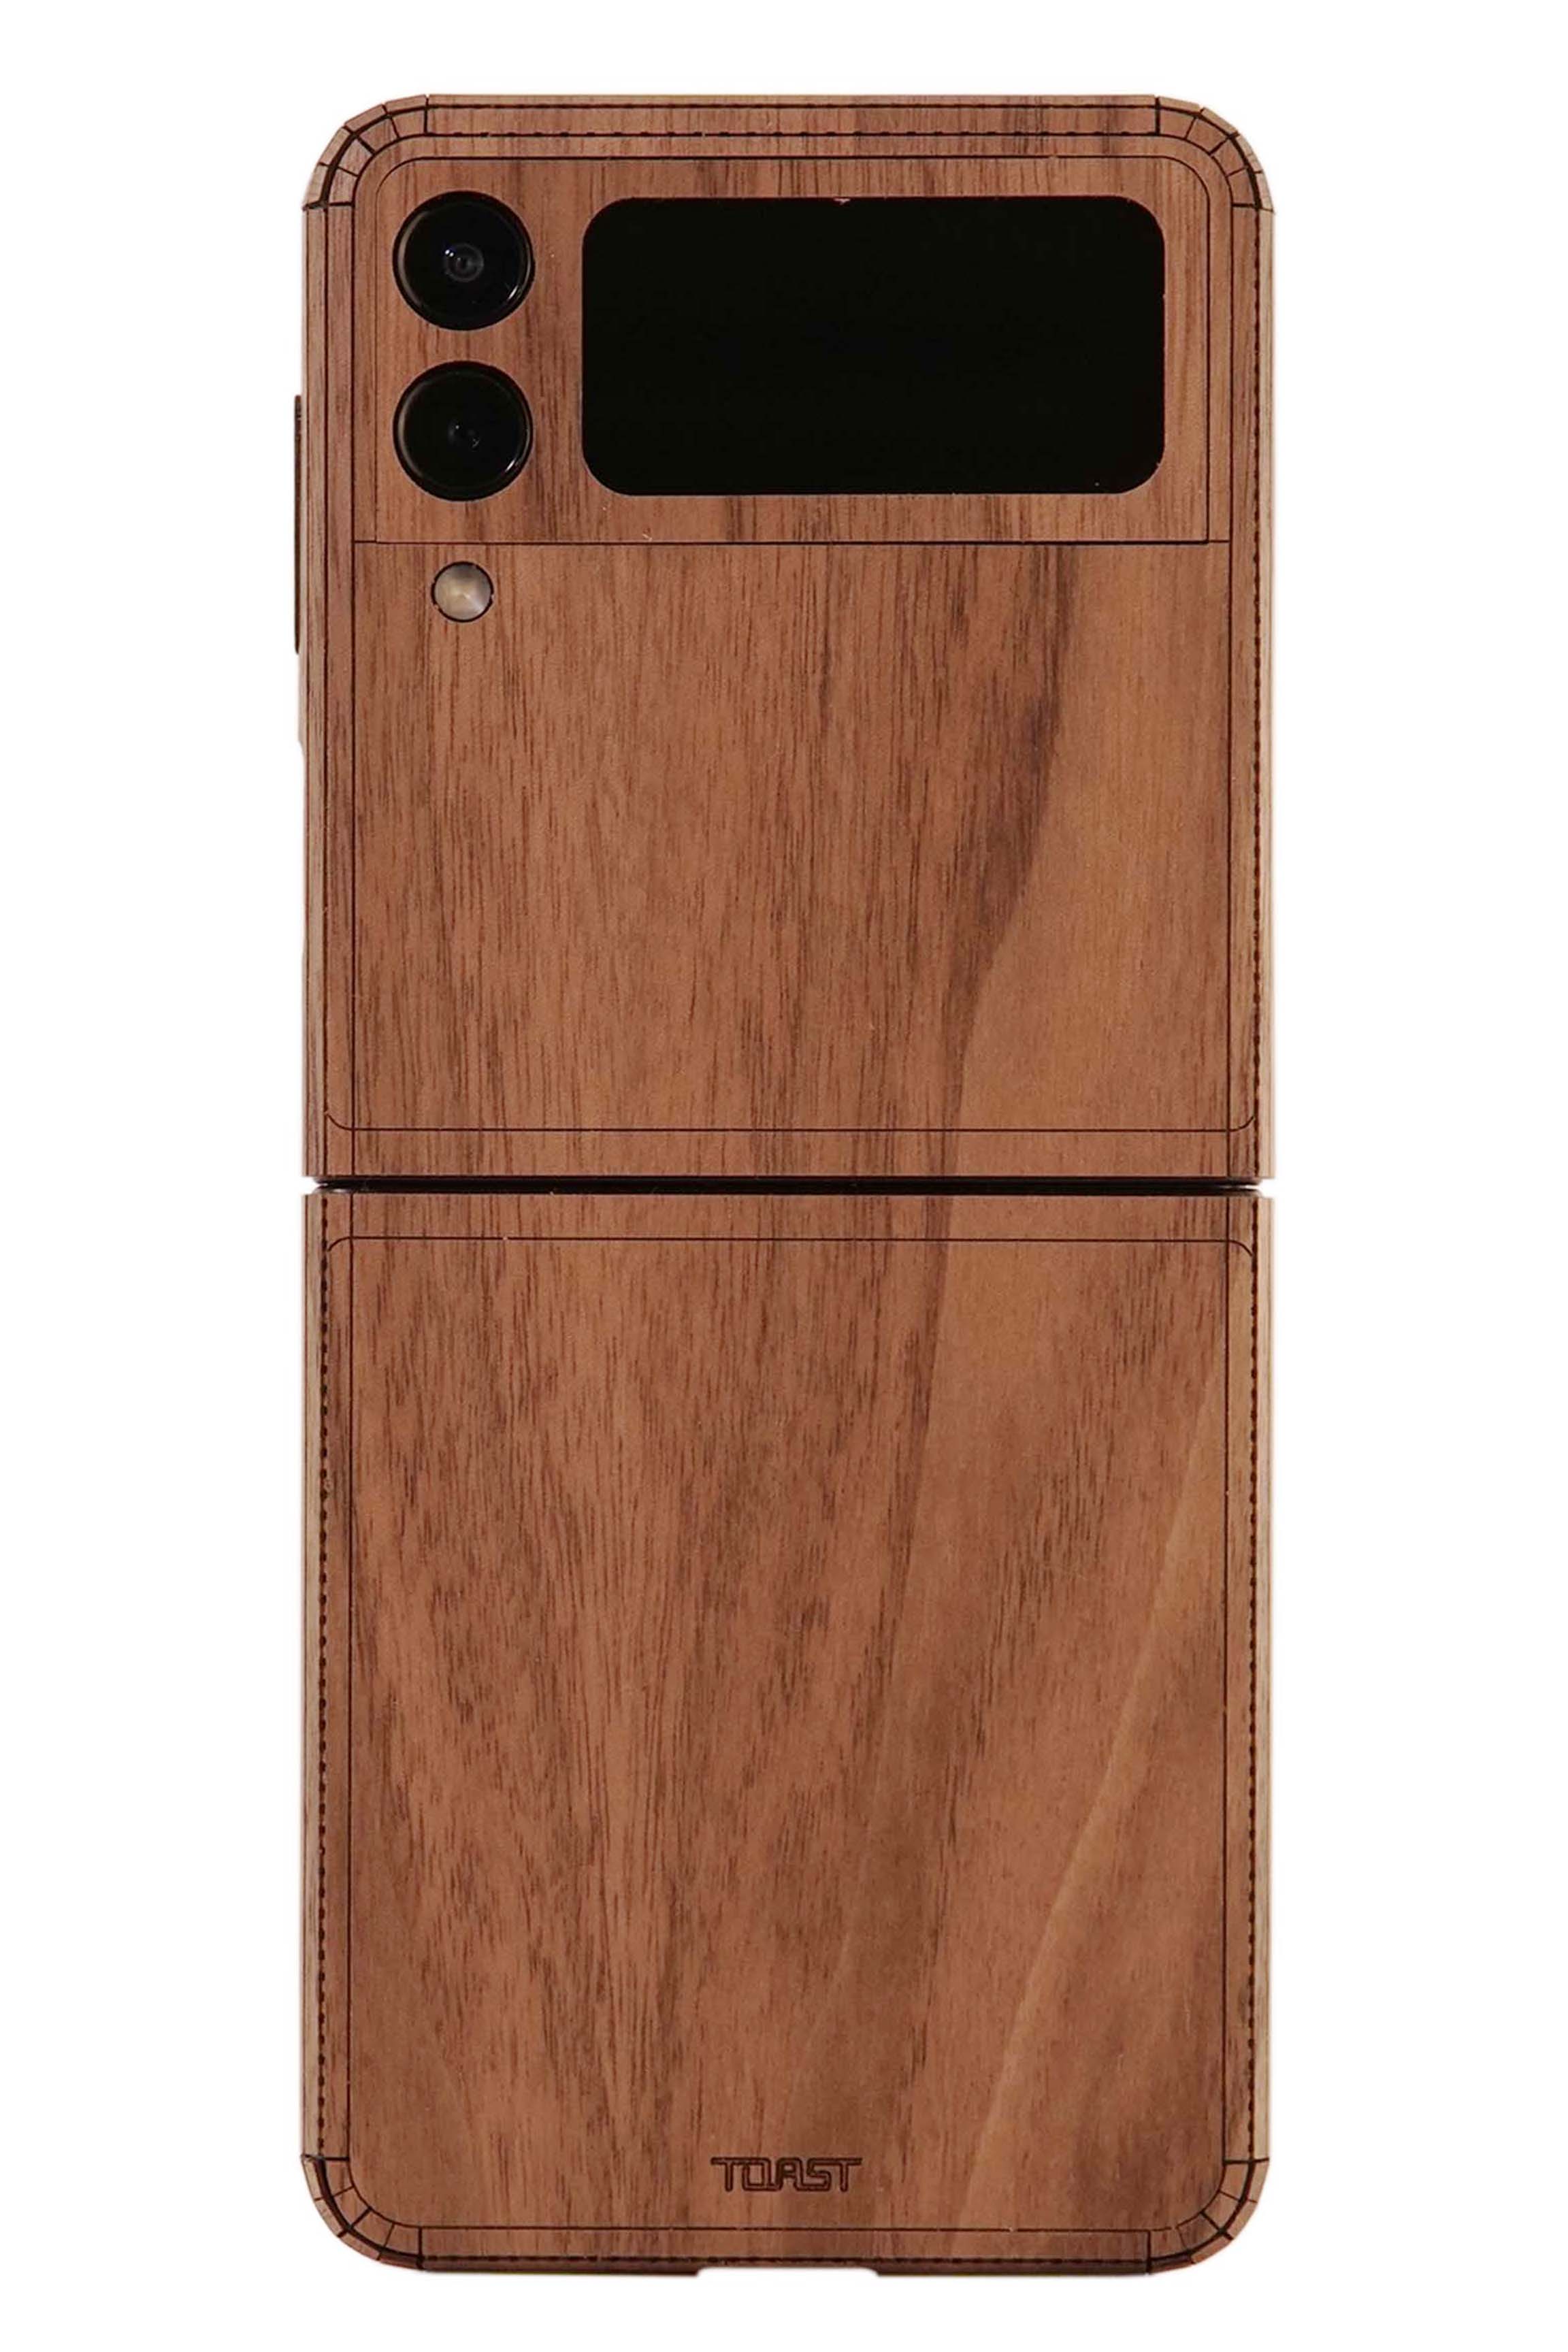 Samsung Galaxy Z Flip3 wood cover